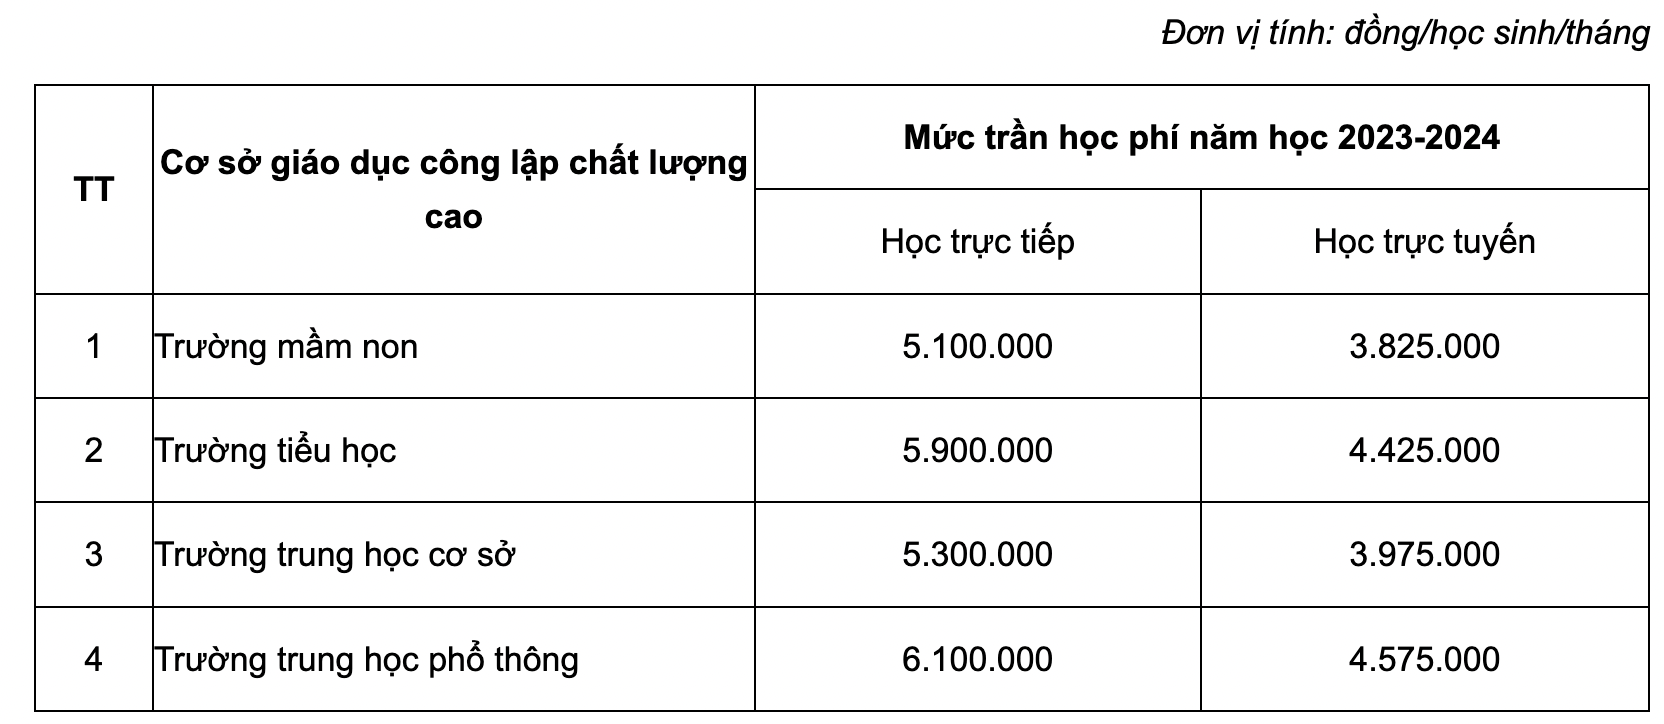 Học phí các các trường công lập chất lượng cao ở Hà Nội từ năm 2023-2024